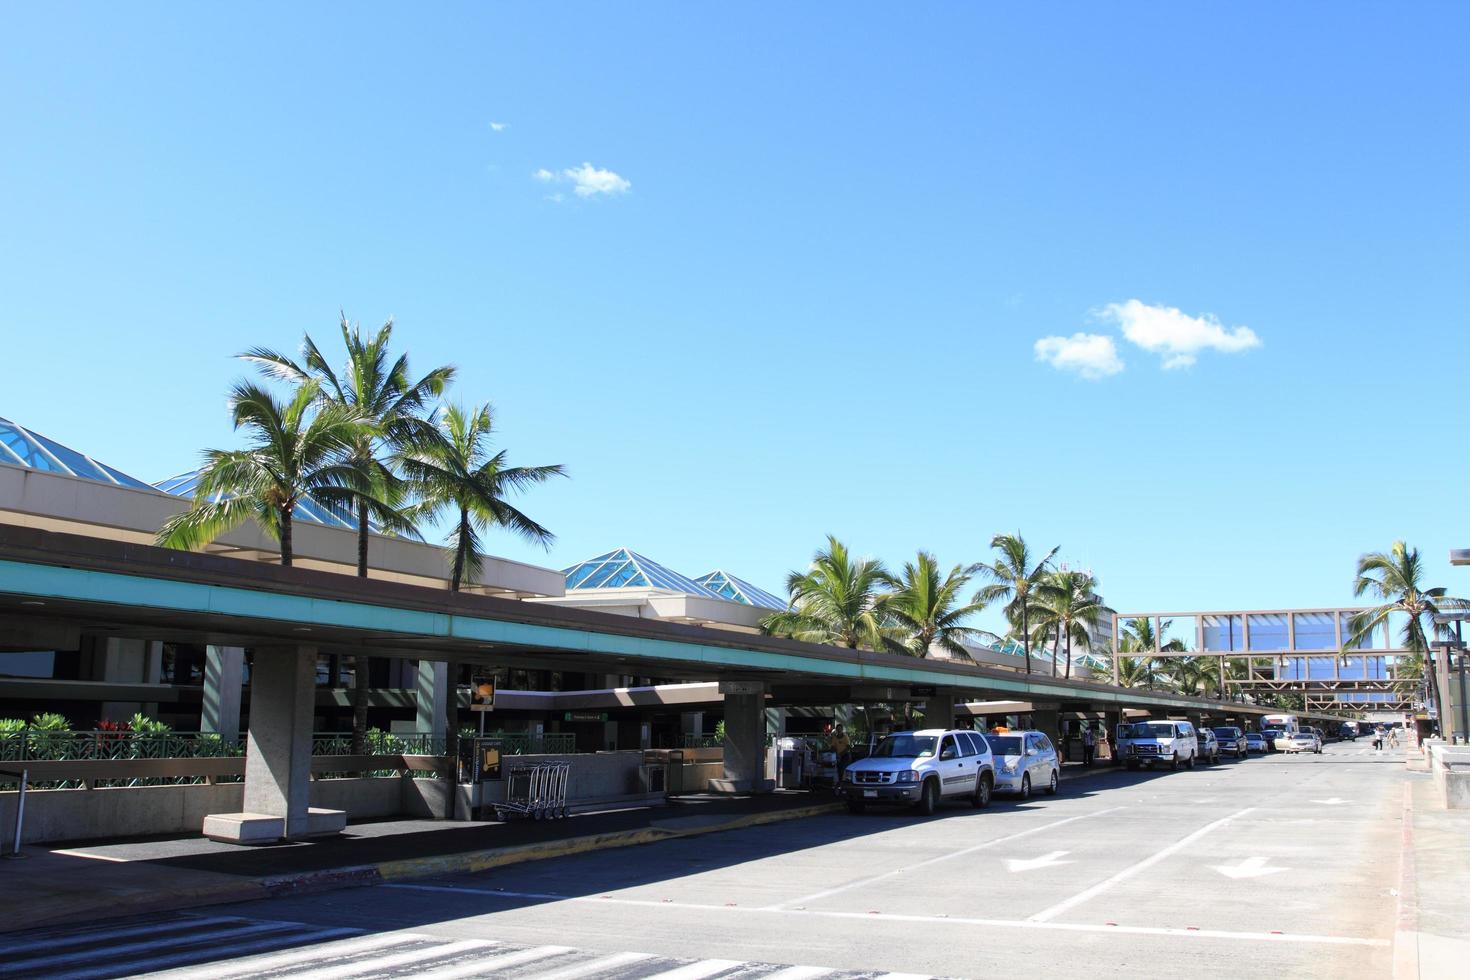 aeroporto internacional daniel k inoue havaí foto